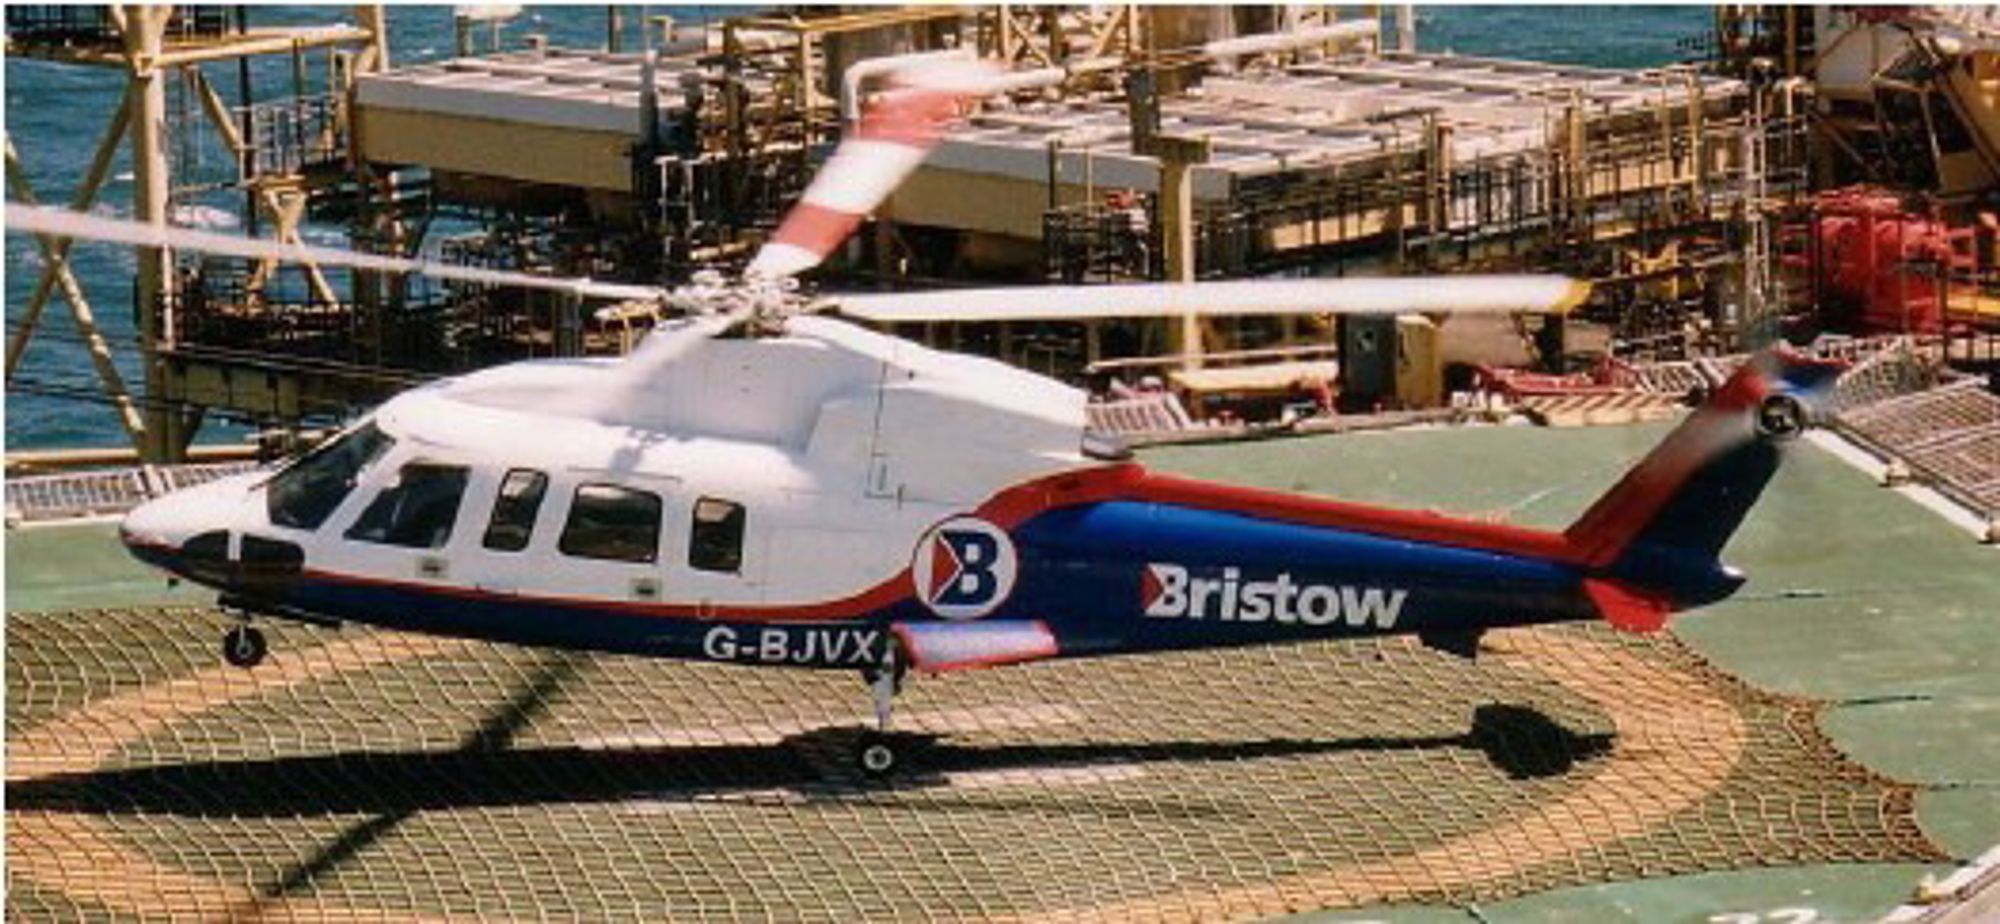 Dette Sikorsky S-76-helikopteret fra Bristow havarerte på vei til Norwich i 2002 og tok livet av alle elleve om bord. Et av bladene på hovedrotoren sviktet. Trolig hadde det vært en voksende sprekk på rotorbladet i tre år før ulykken skjedde, uten at dette ble oppdaget. 